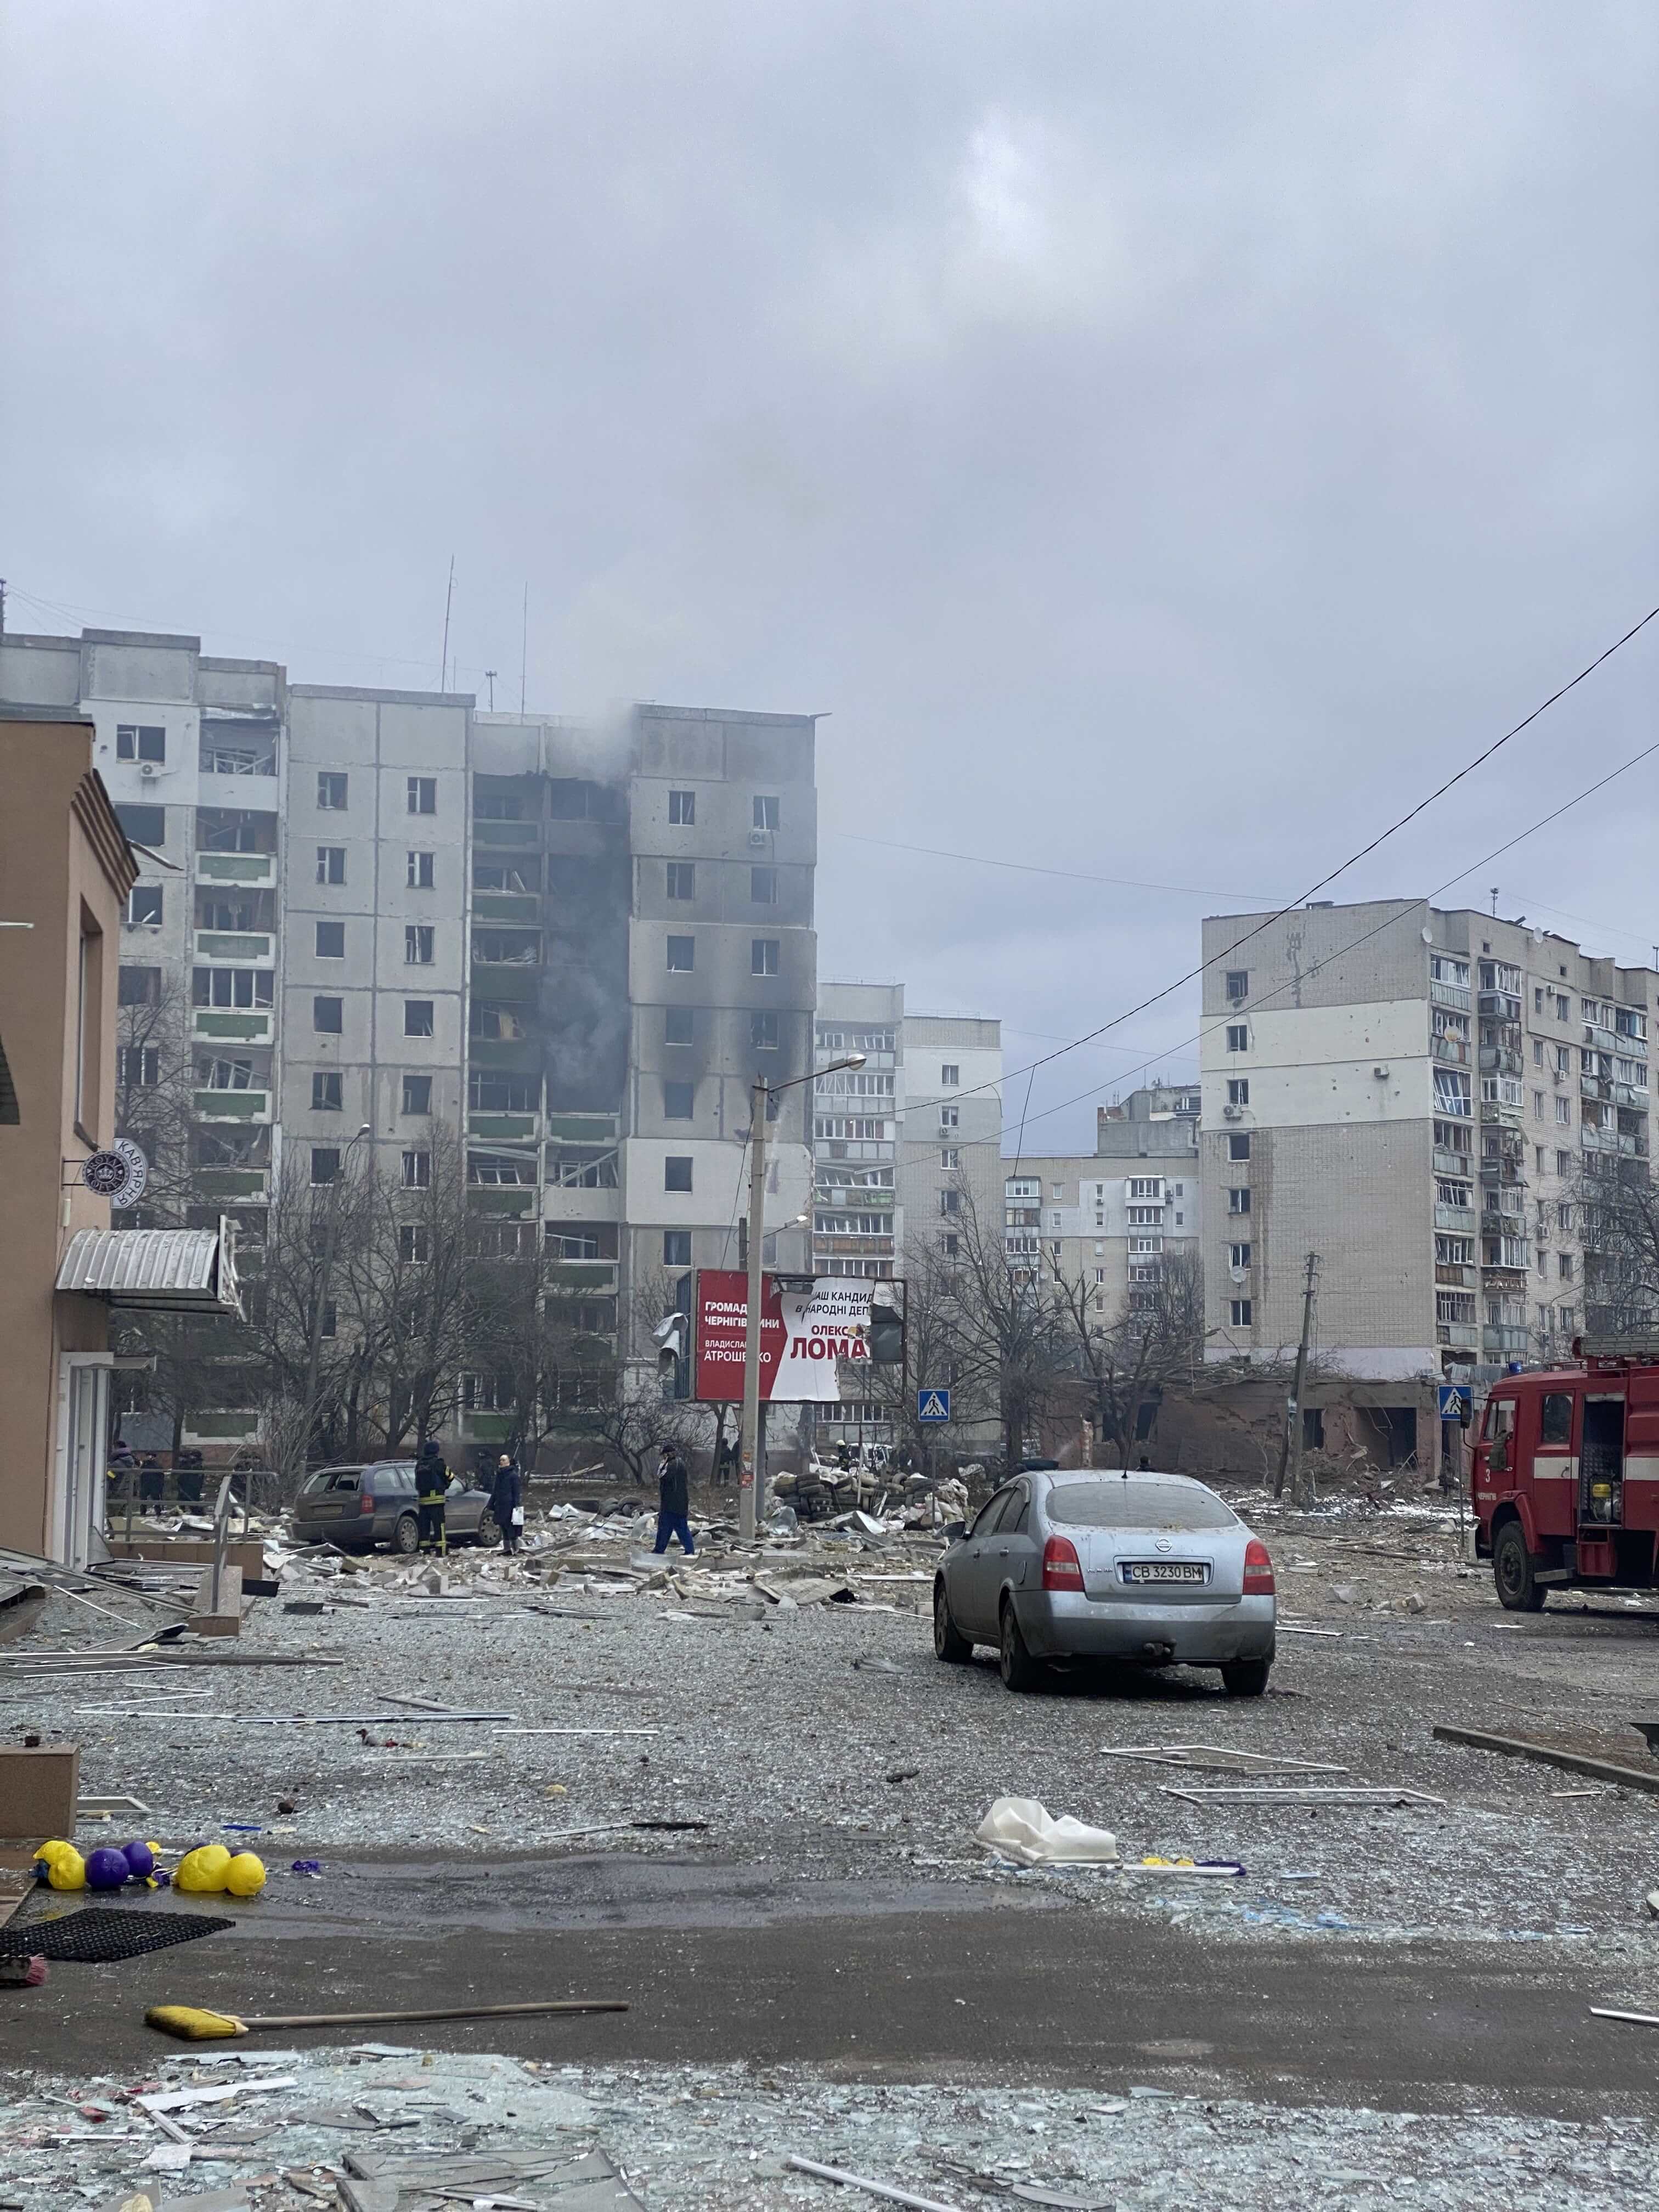 Une rue de Tchernihiv, dans le nord de l'Ukraine, parsemée de débris et d’éclats de verre à la suite de frappes russes ayant endommagé des immeubles résidentiels et brisé des fenêtres. Fin mars 2022, les habitants n’avaient qu’un accès très limité à l'eau courante, à l'électricité ou au chauffage, suite à l'intensification des attaques russes.